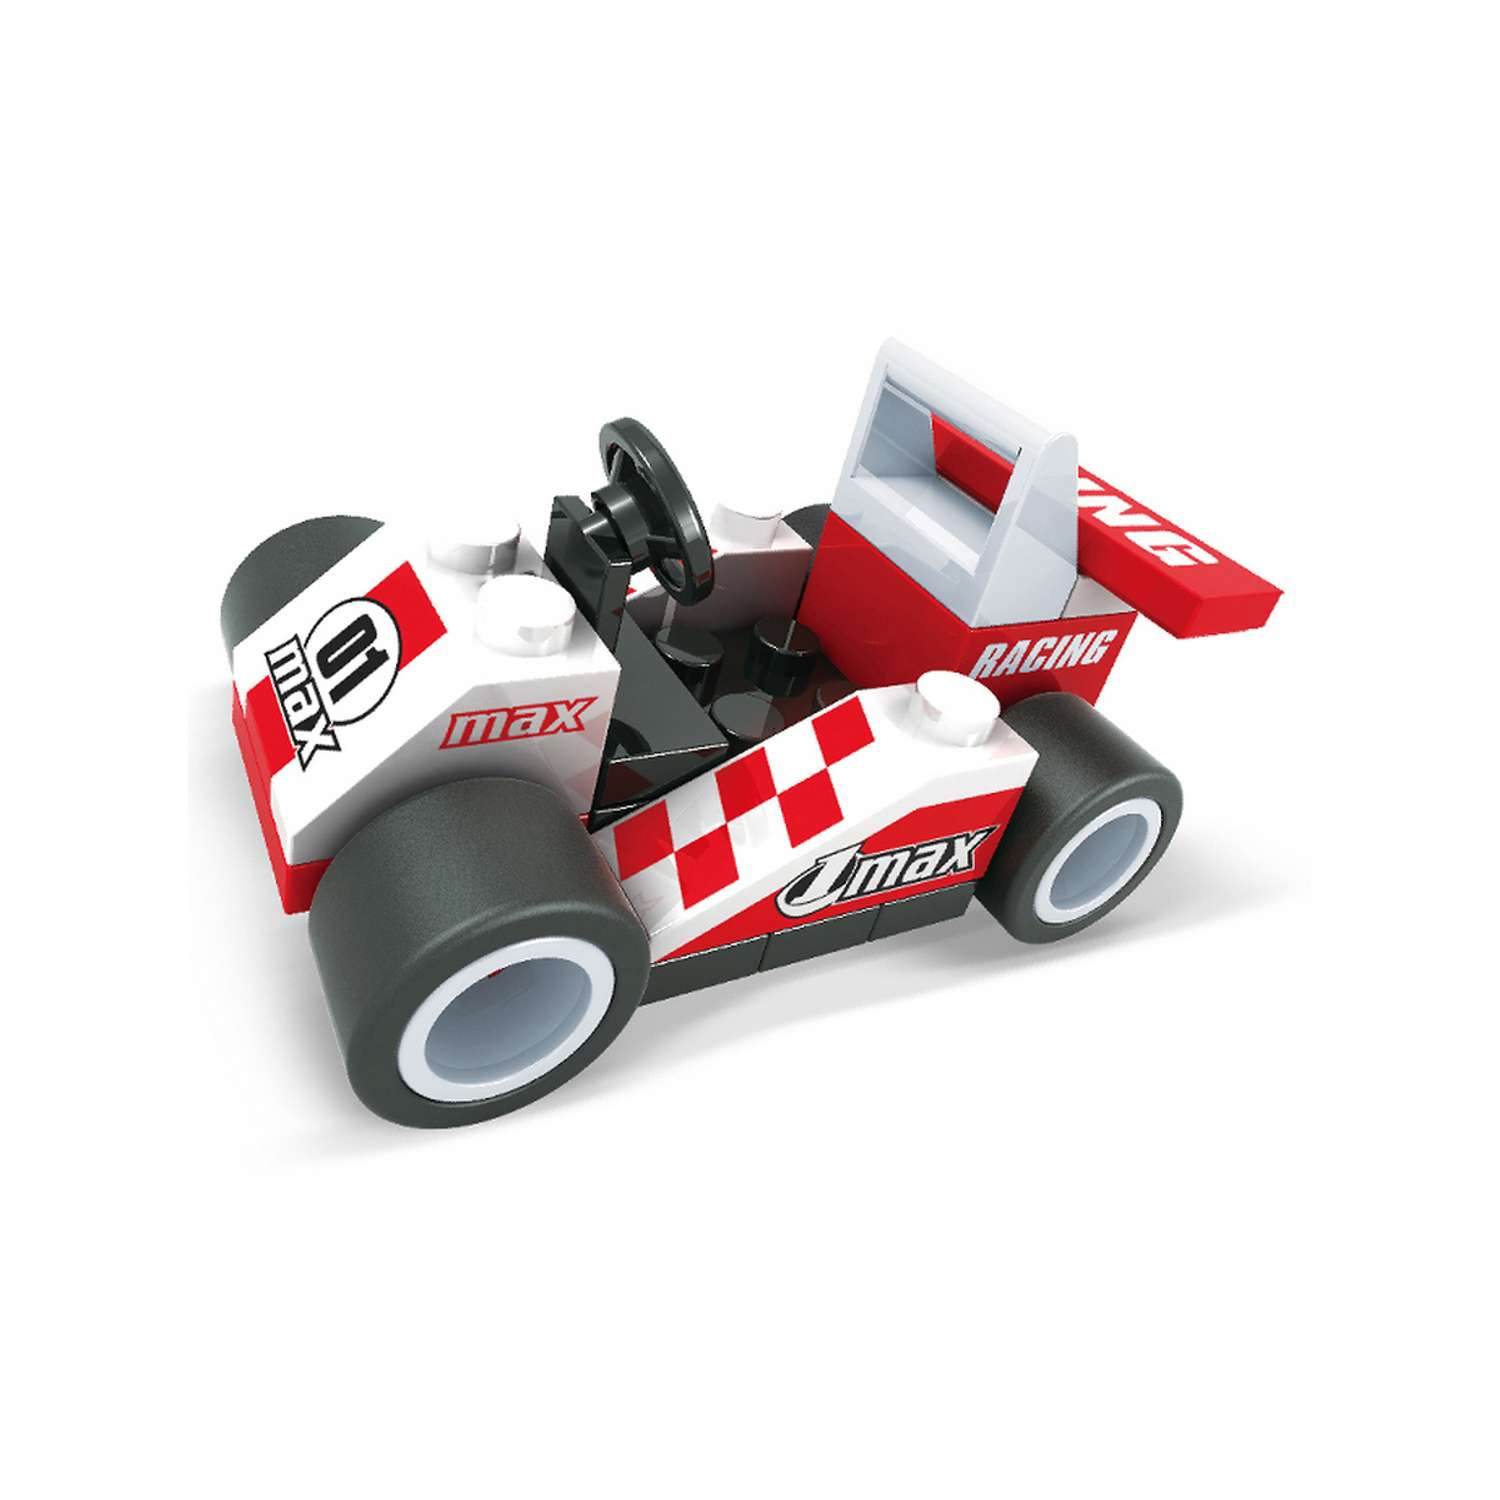 Конструктор AUSINI Формула чемпионов: Карт 01 max бело-красный 36 деталей - фото 2